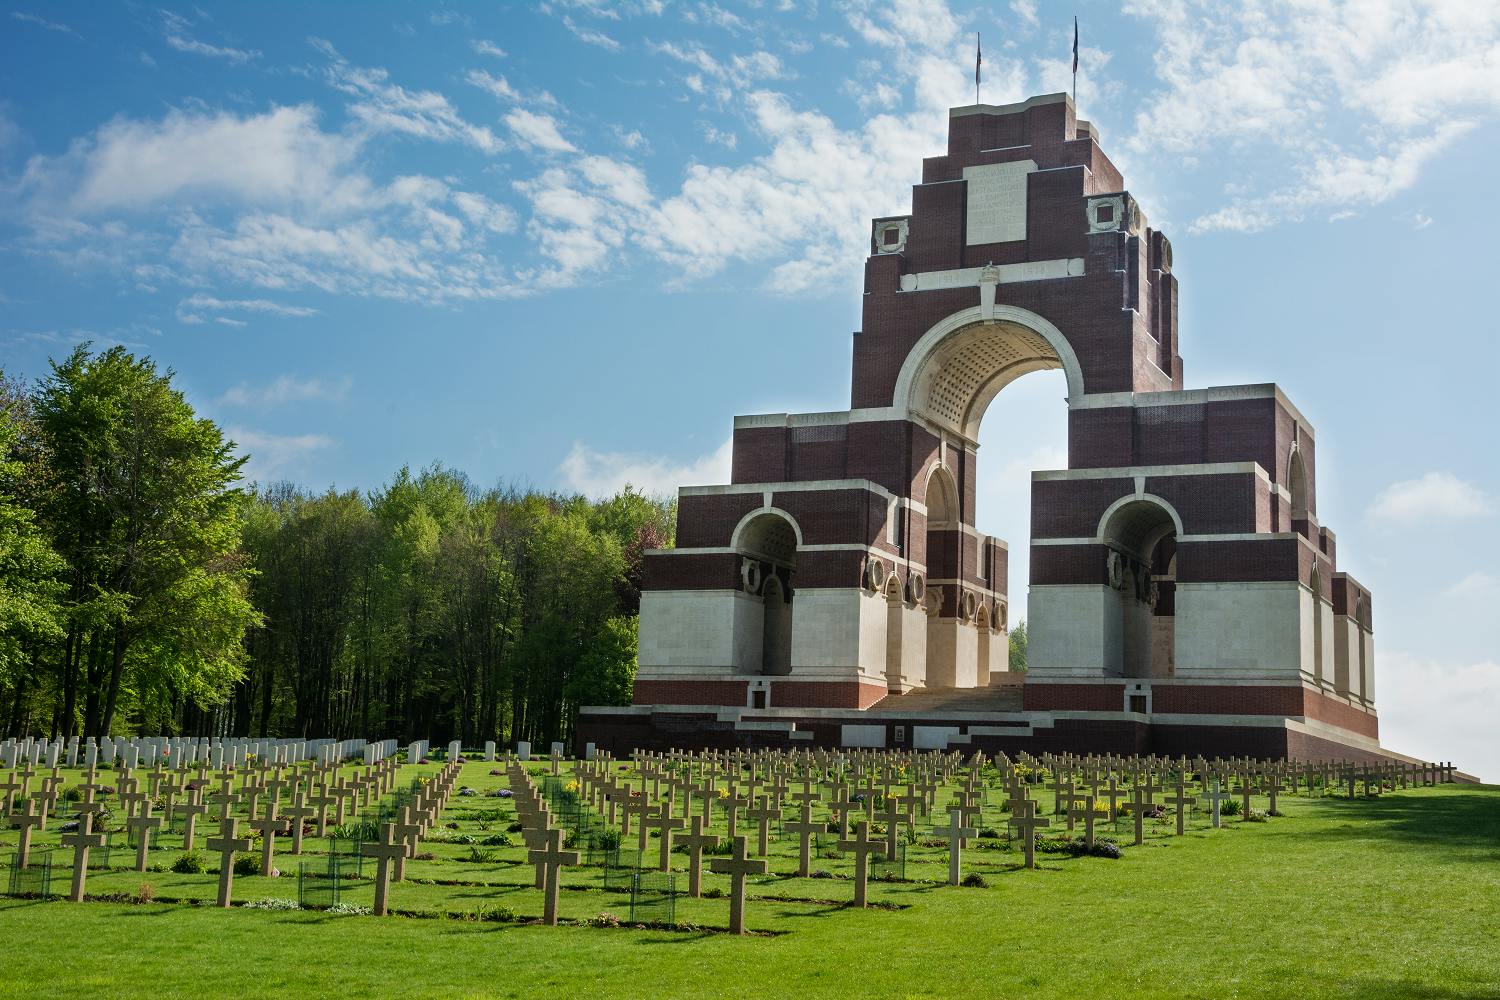 Excursión de un día a Somme Battlefields desde París